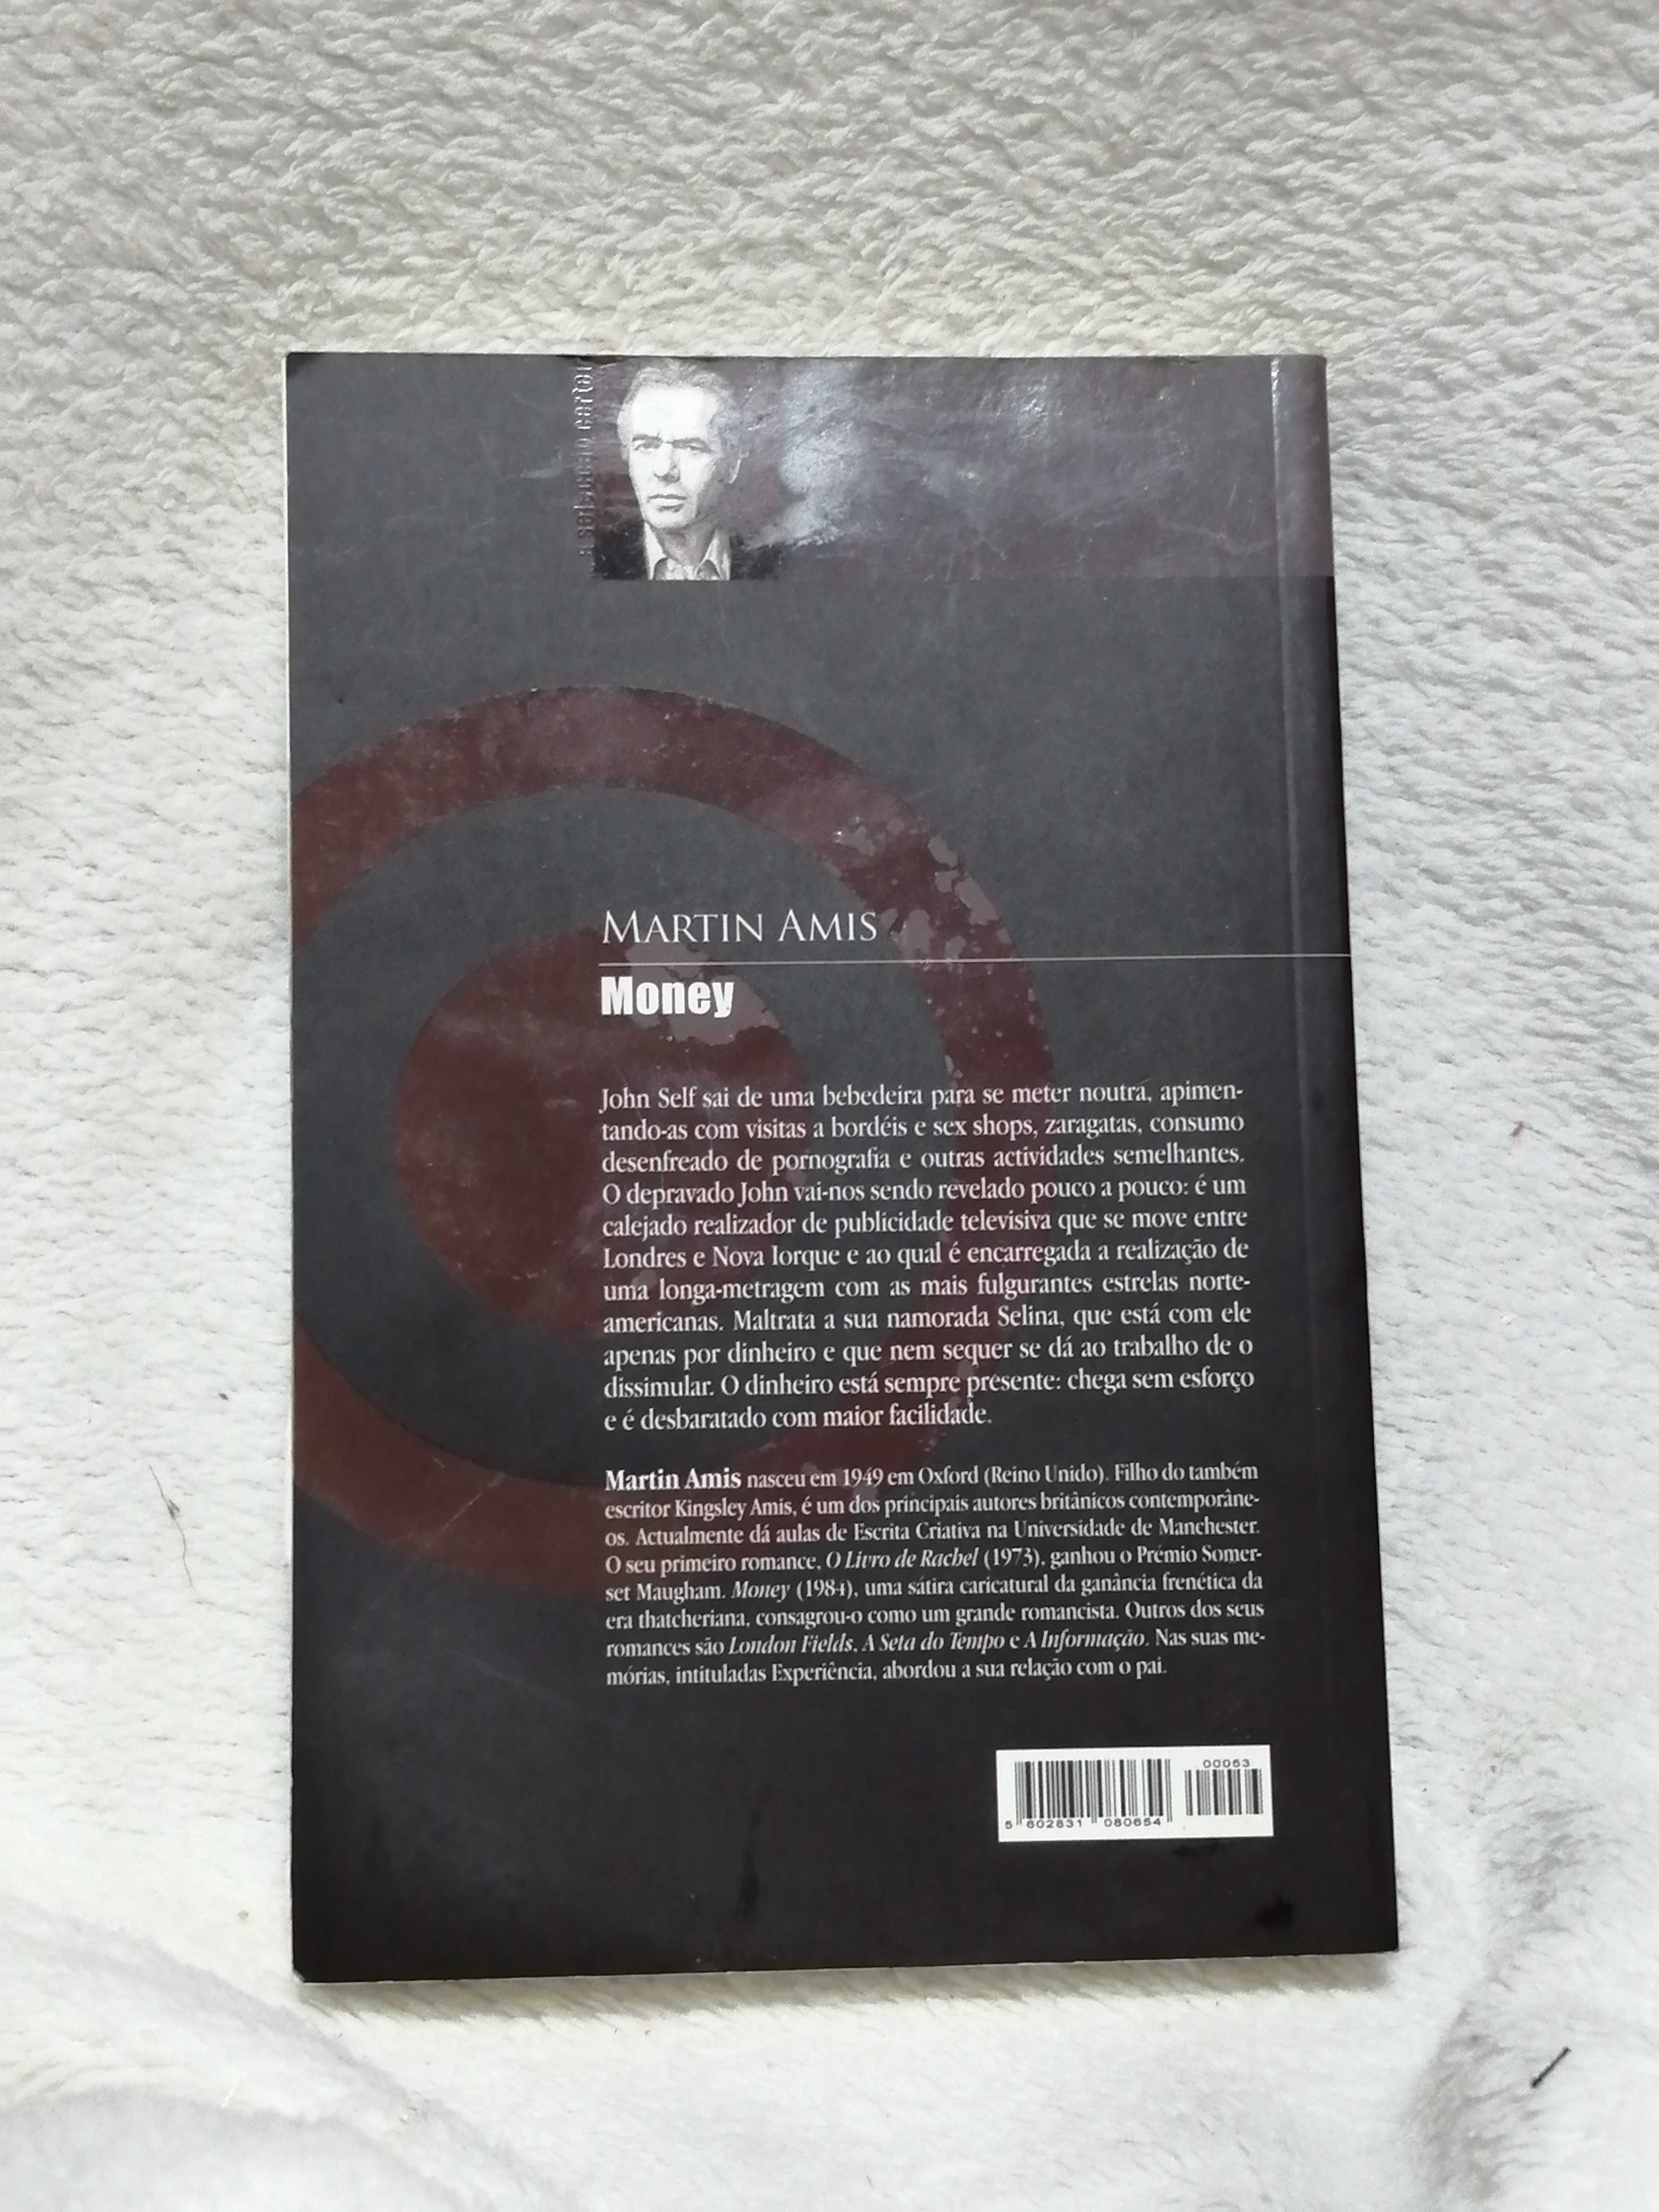 livro "Money" de Martin Amis (traduzido para Português) portes grátis